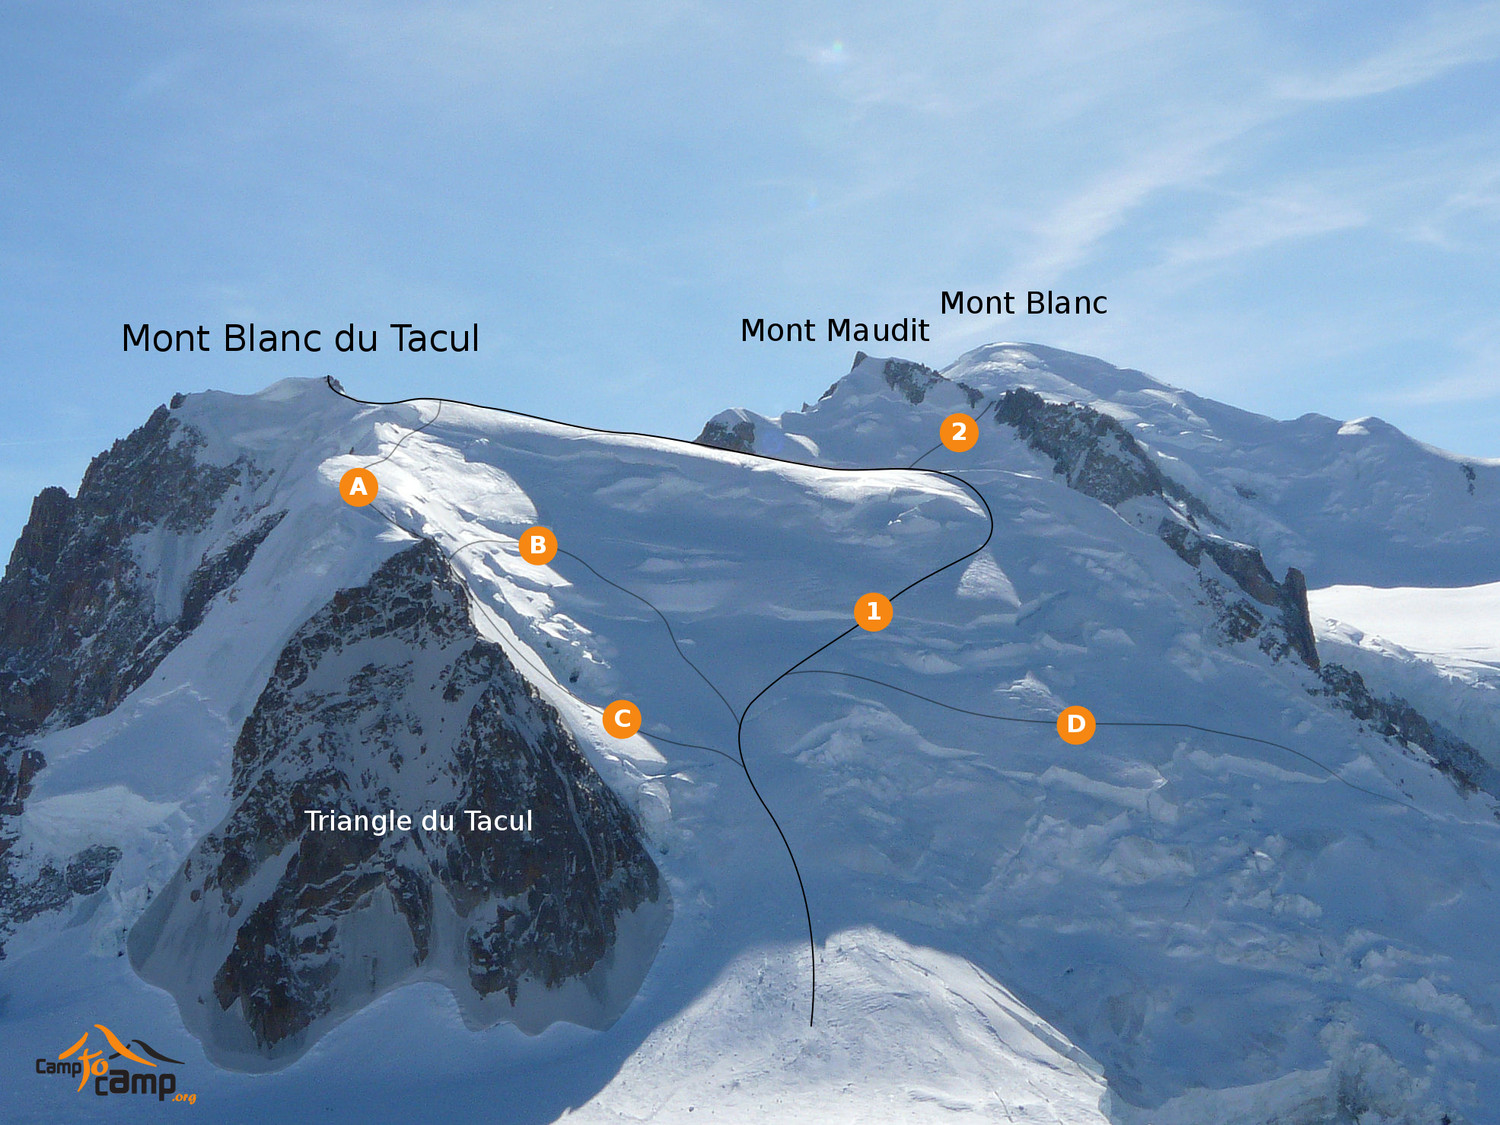 Массив Монблан и вершина Монблан дю Такул (Mont Blanc du Tacul) высотой 4248 метров